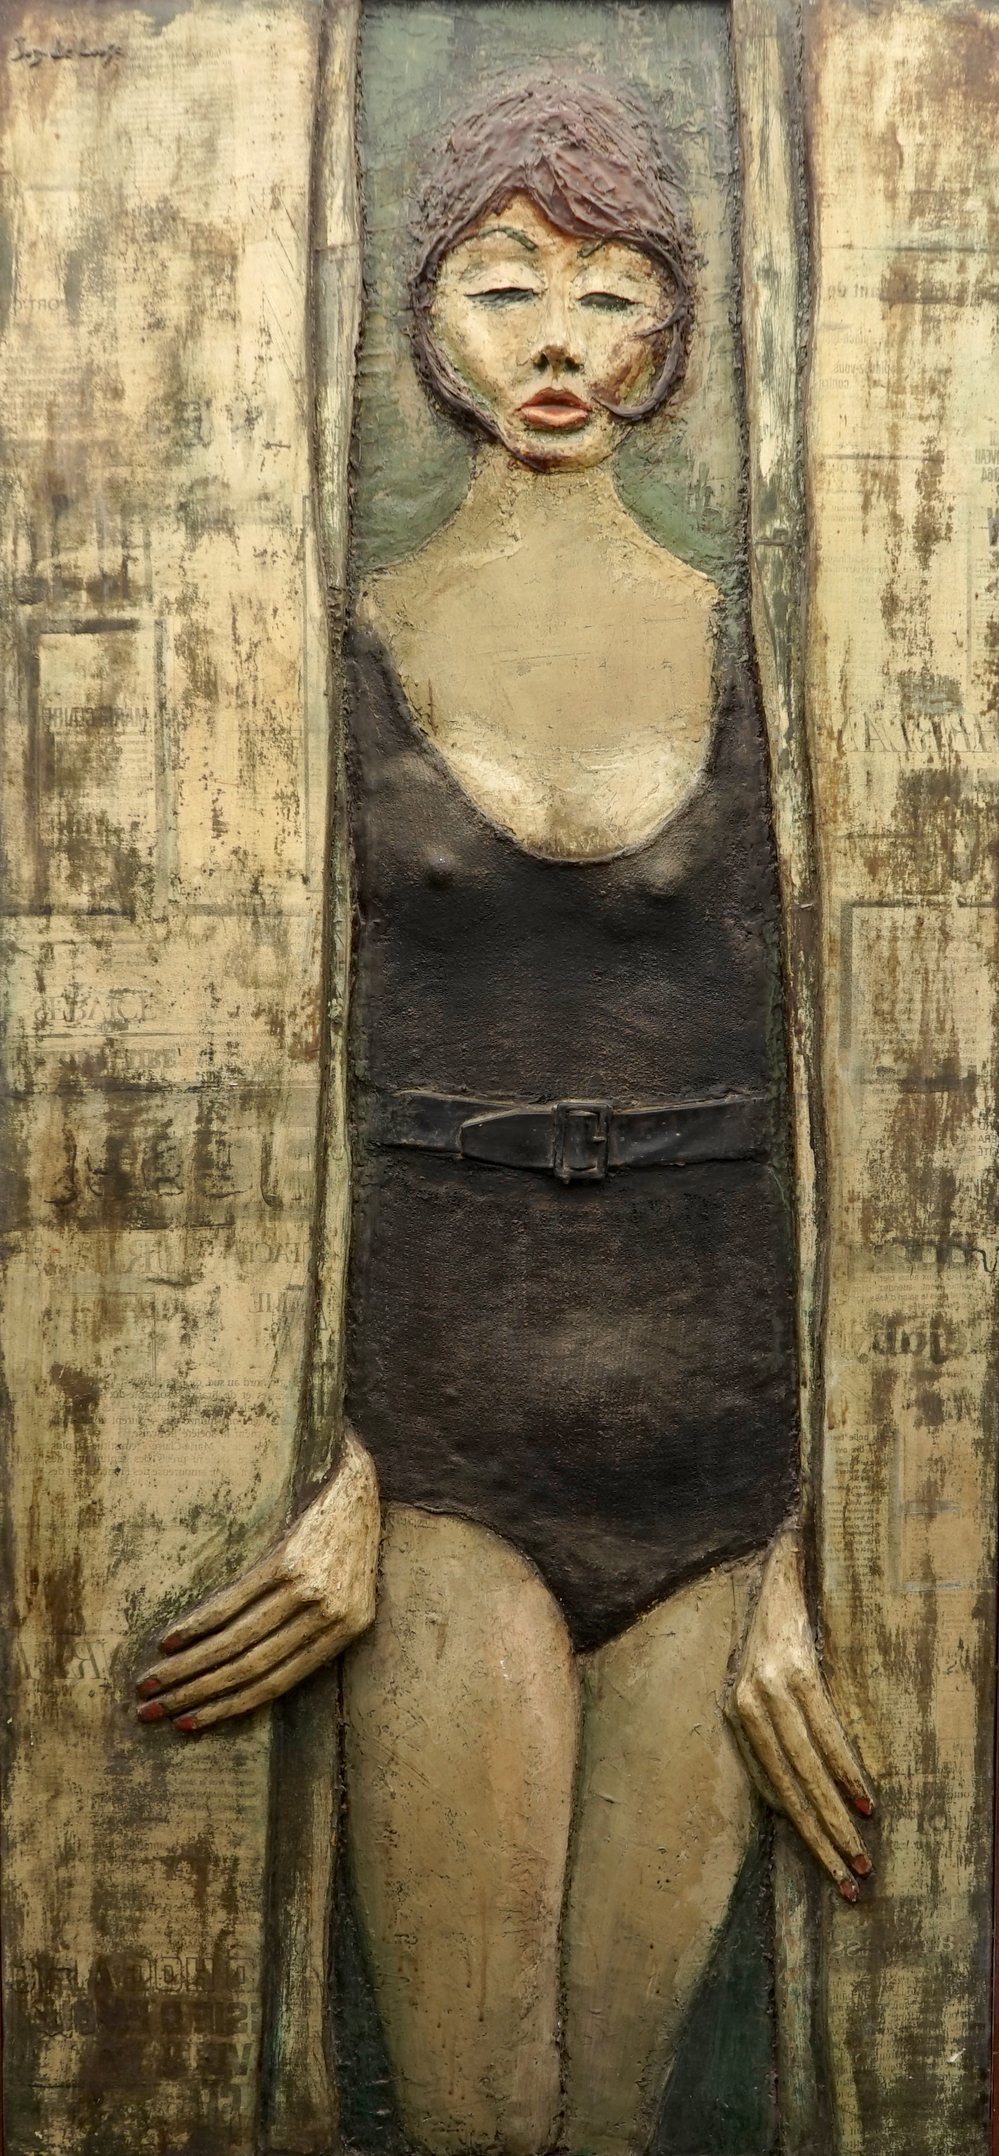 Joz De Loose (1925-2011), Plankenkoorts, 1966, polyester op paneel